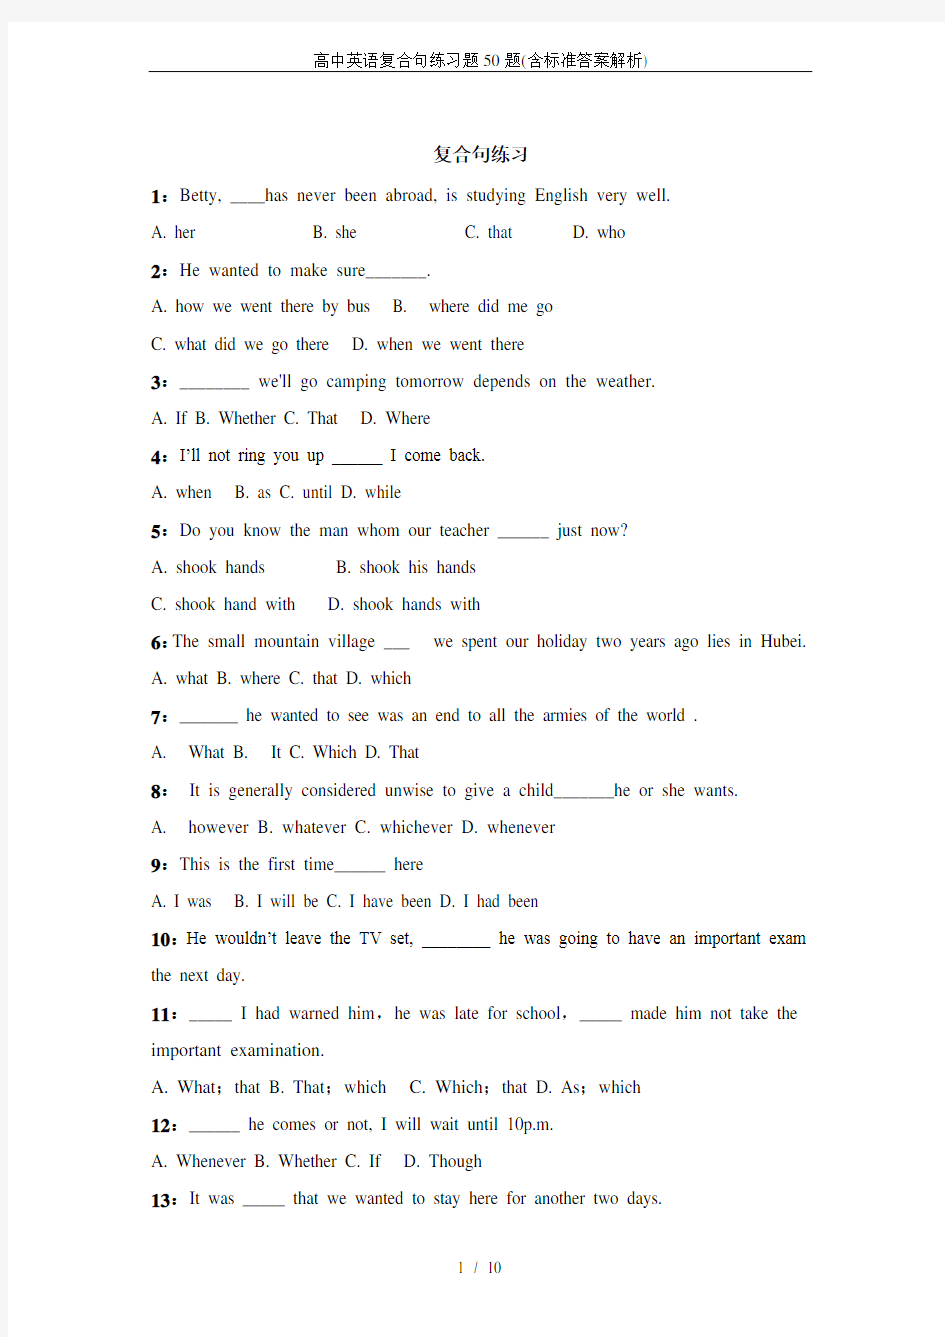 高中英语复合句练习题50题(含标准答案解析)